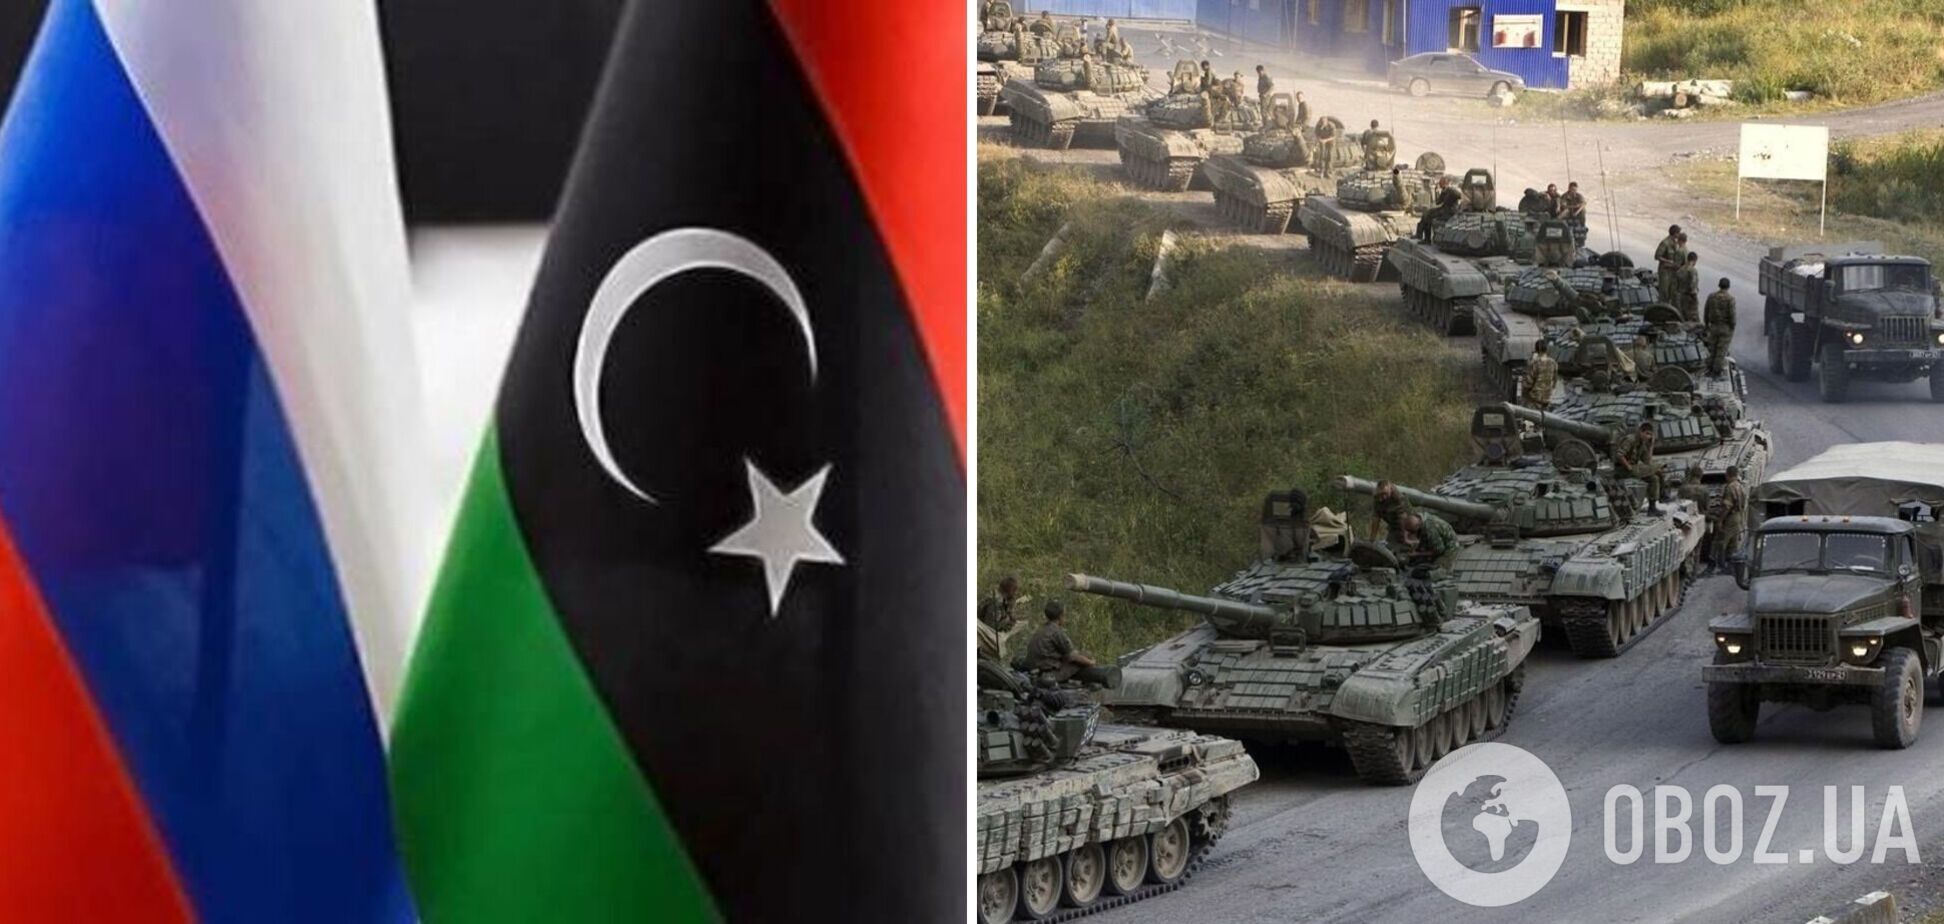 Вызов для США и ЕС: Россия может создать военную базу в Ливии, это откроет для Кремля новые возможности – Bloomberg